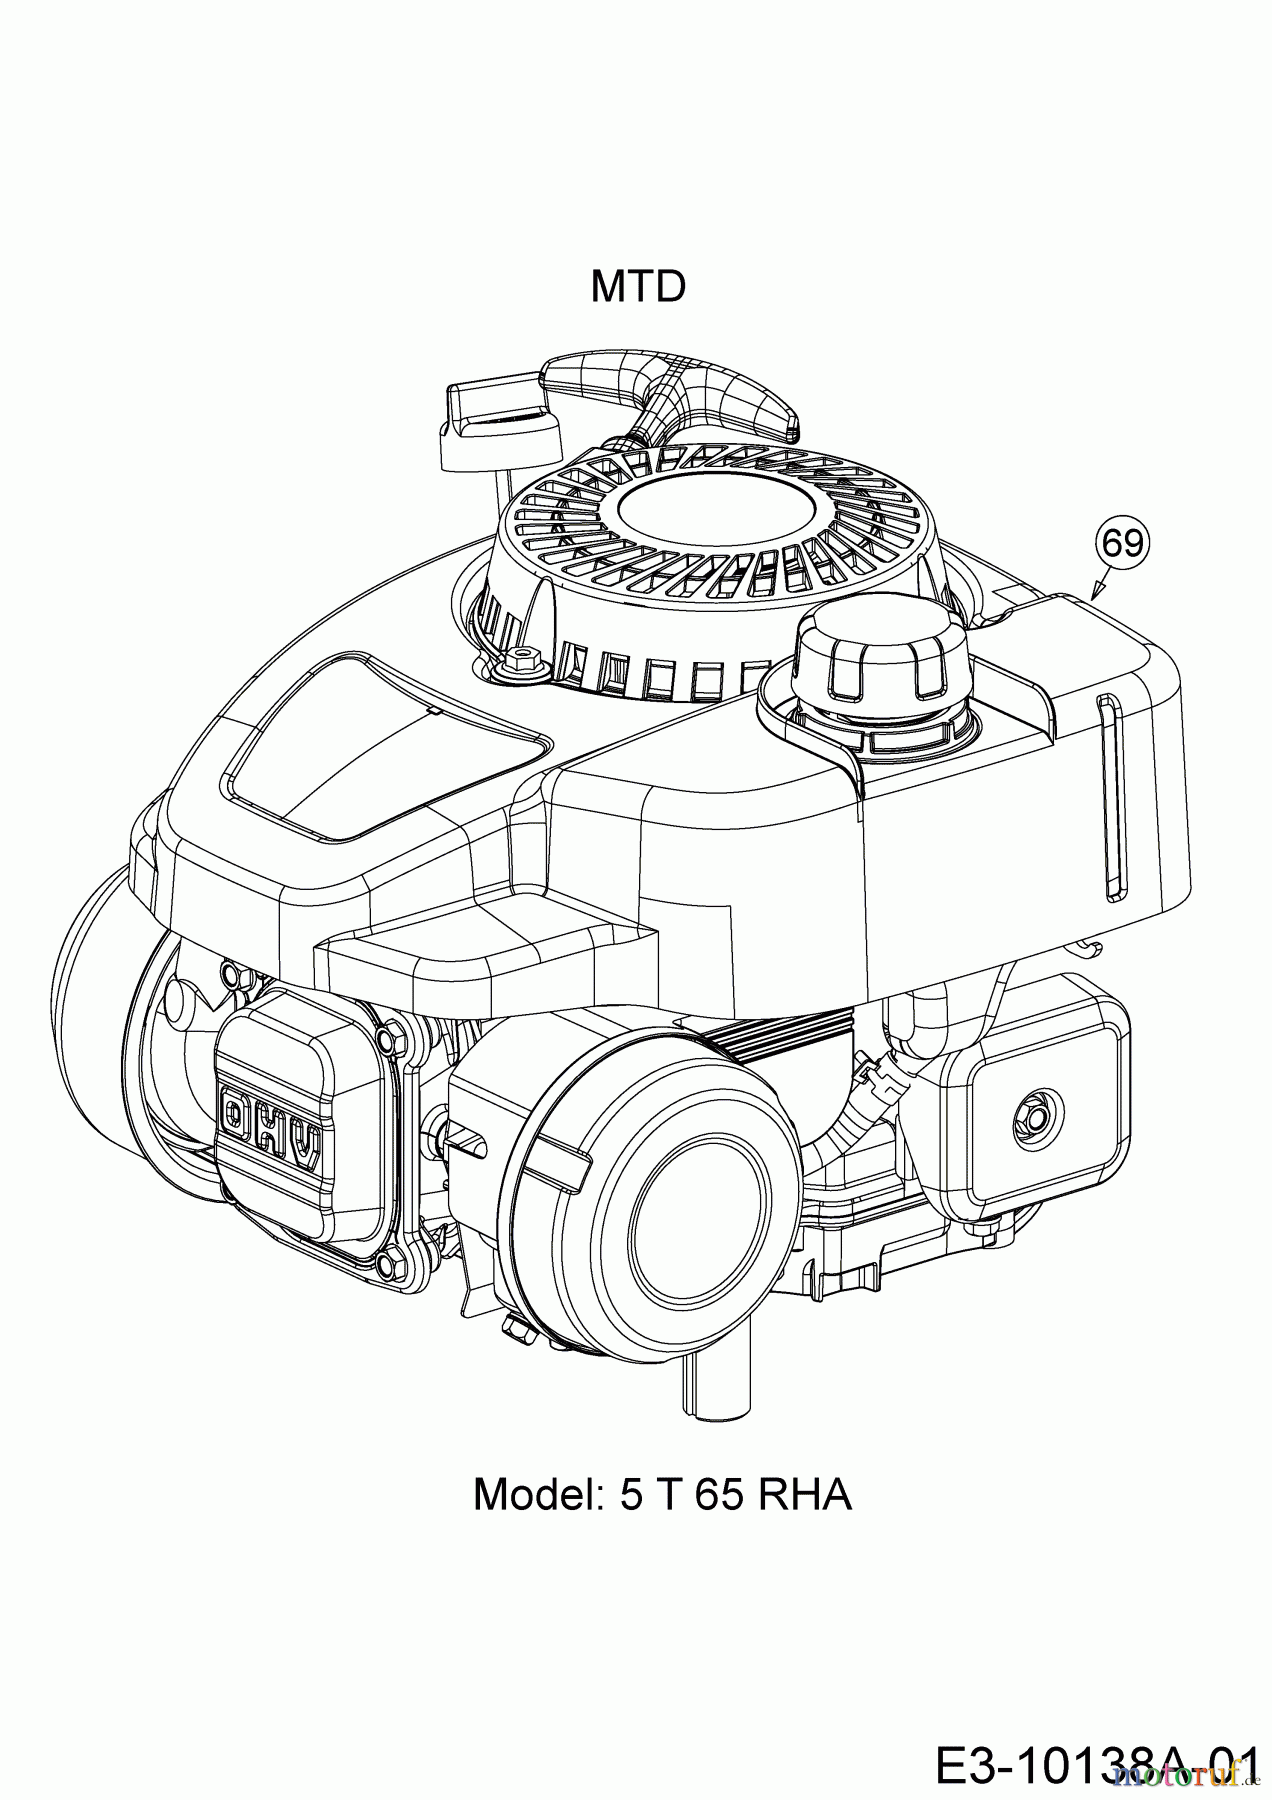  Wolf-Garten Motormäher A 4600 11A-TOSC650  (2017) Motor MTD